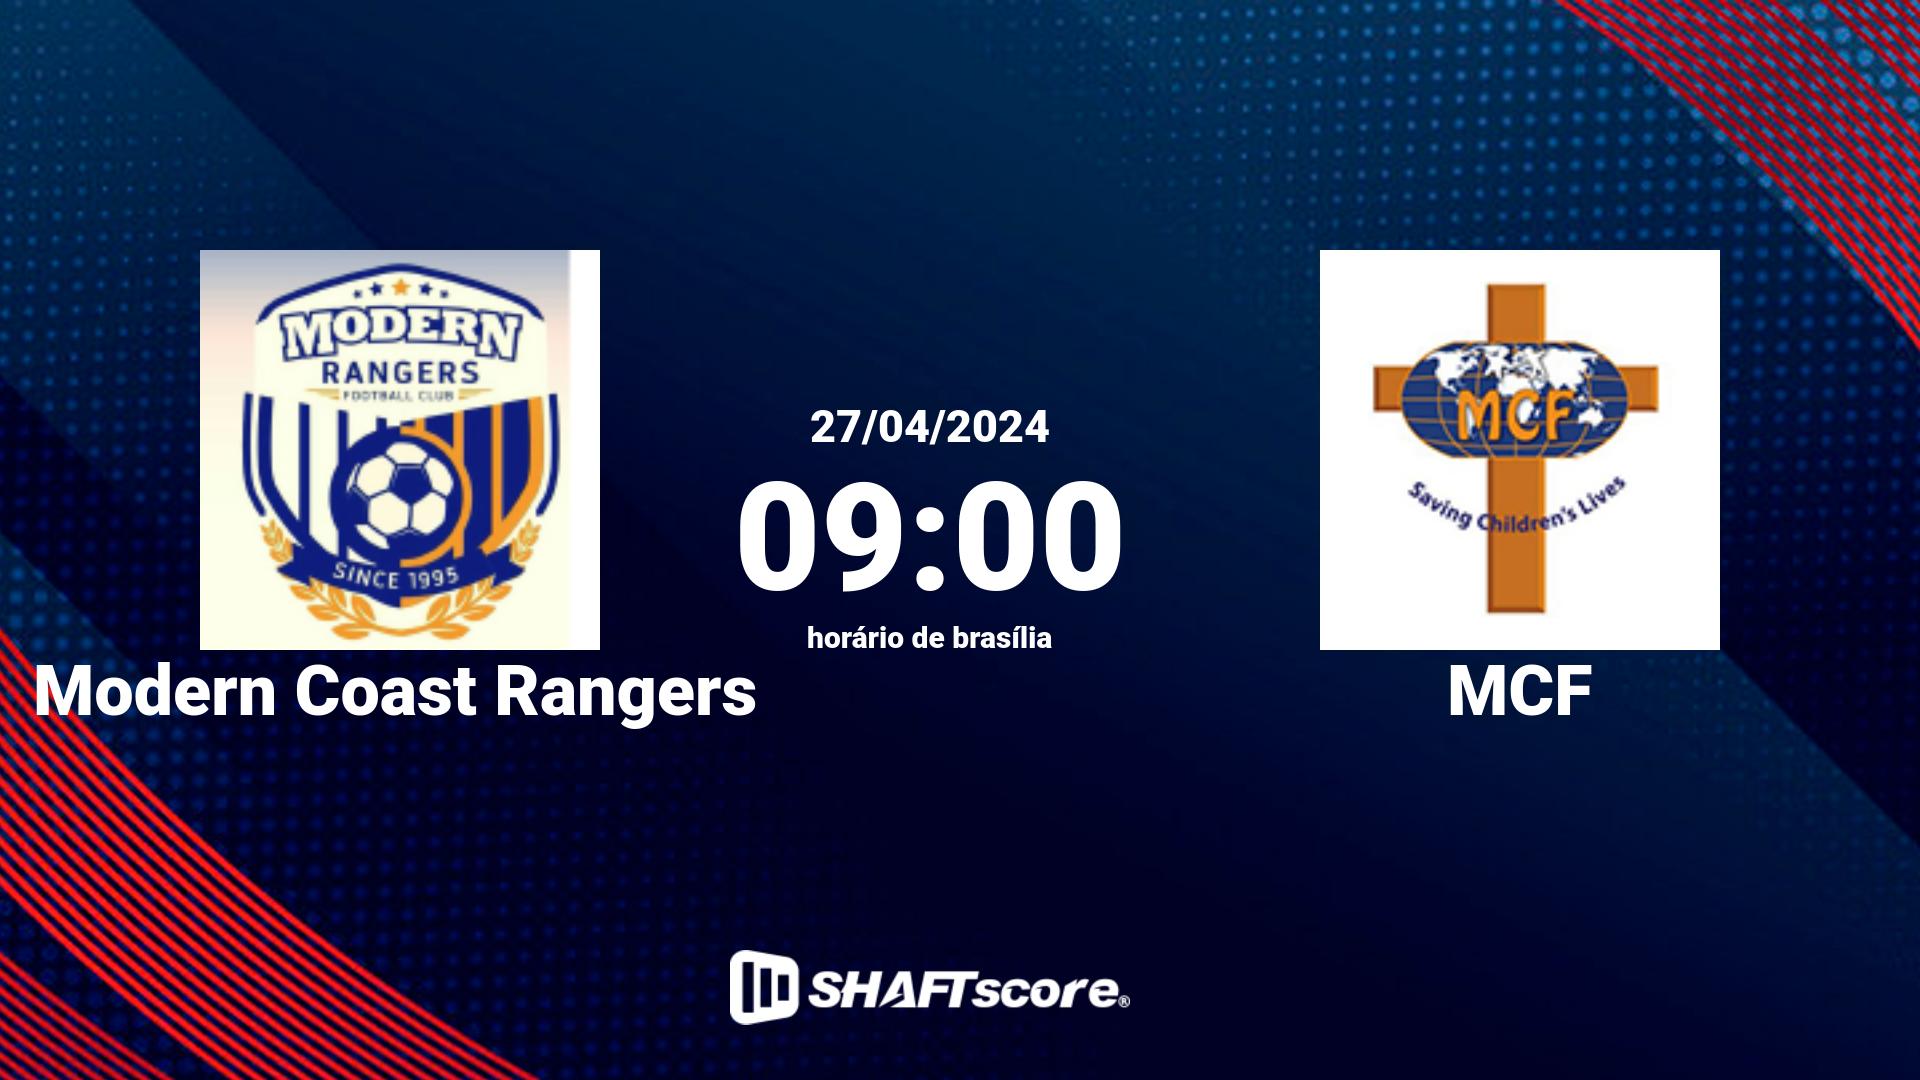 Estatísticas do jogo Modern Coast Rangers vs MCF 27.04 09:00